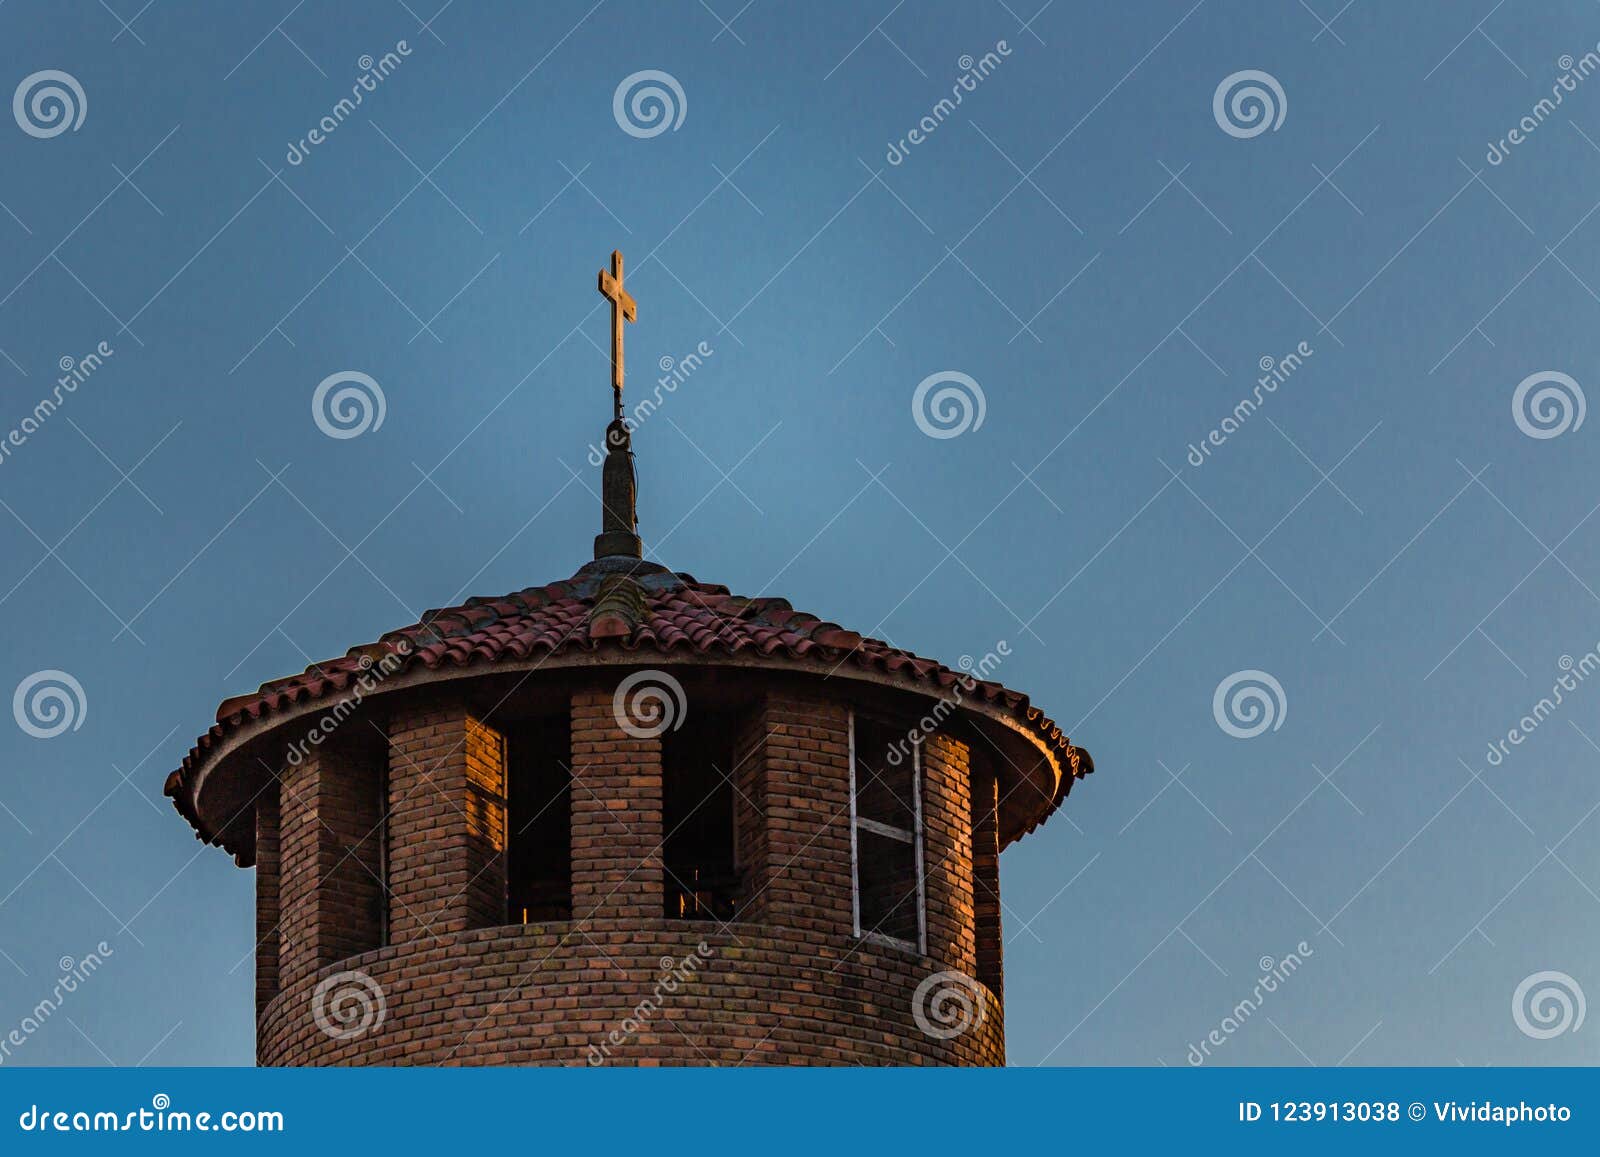 catholics cross on steeple